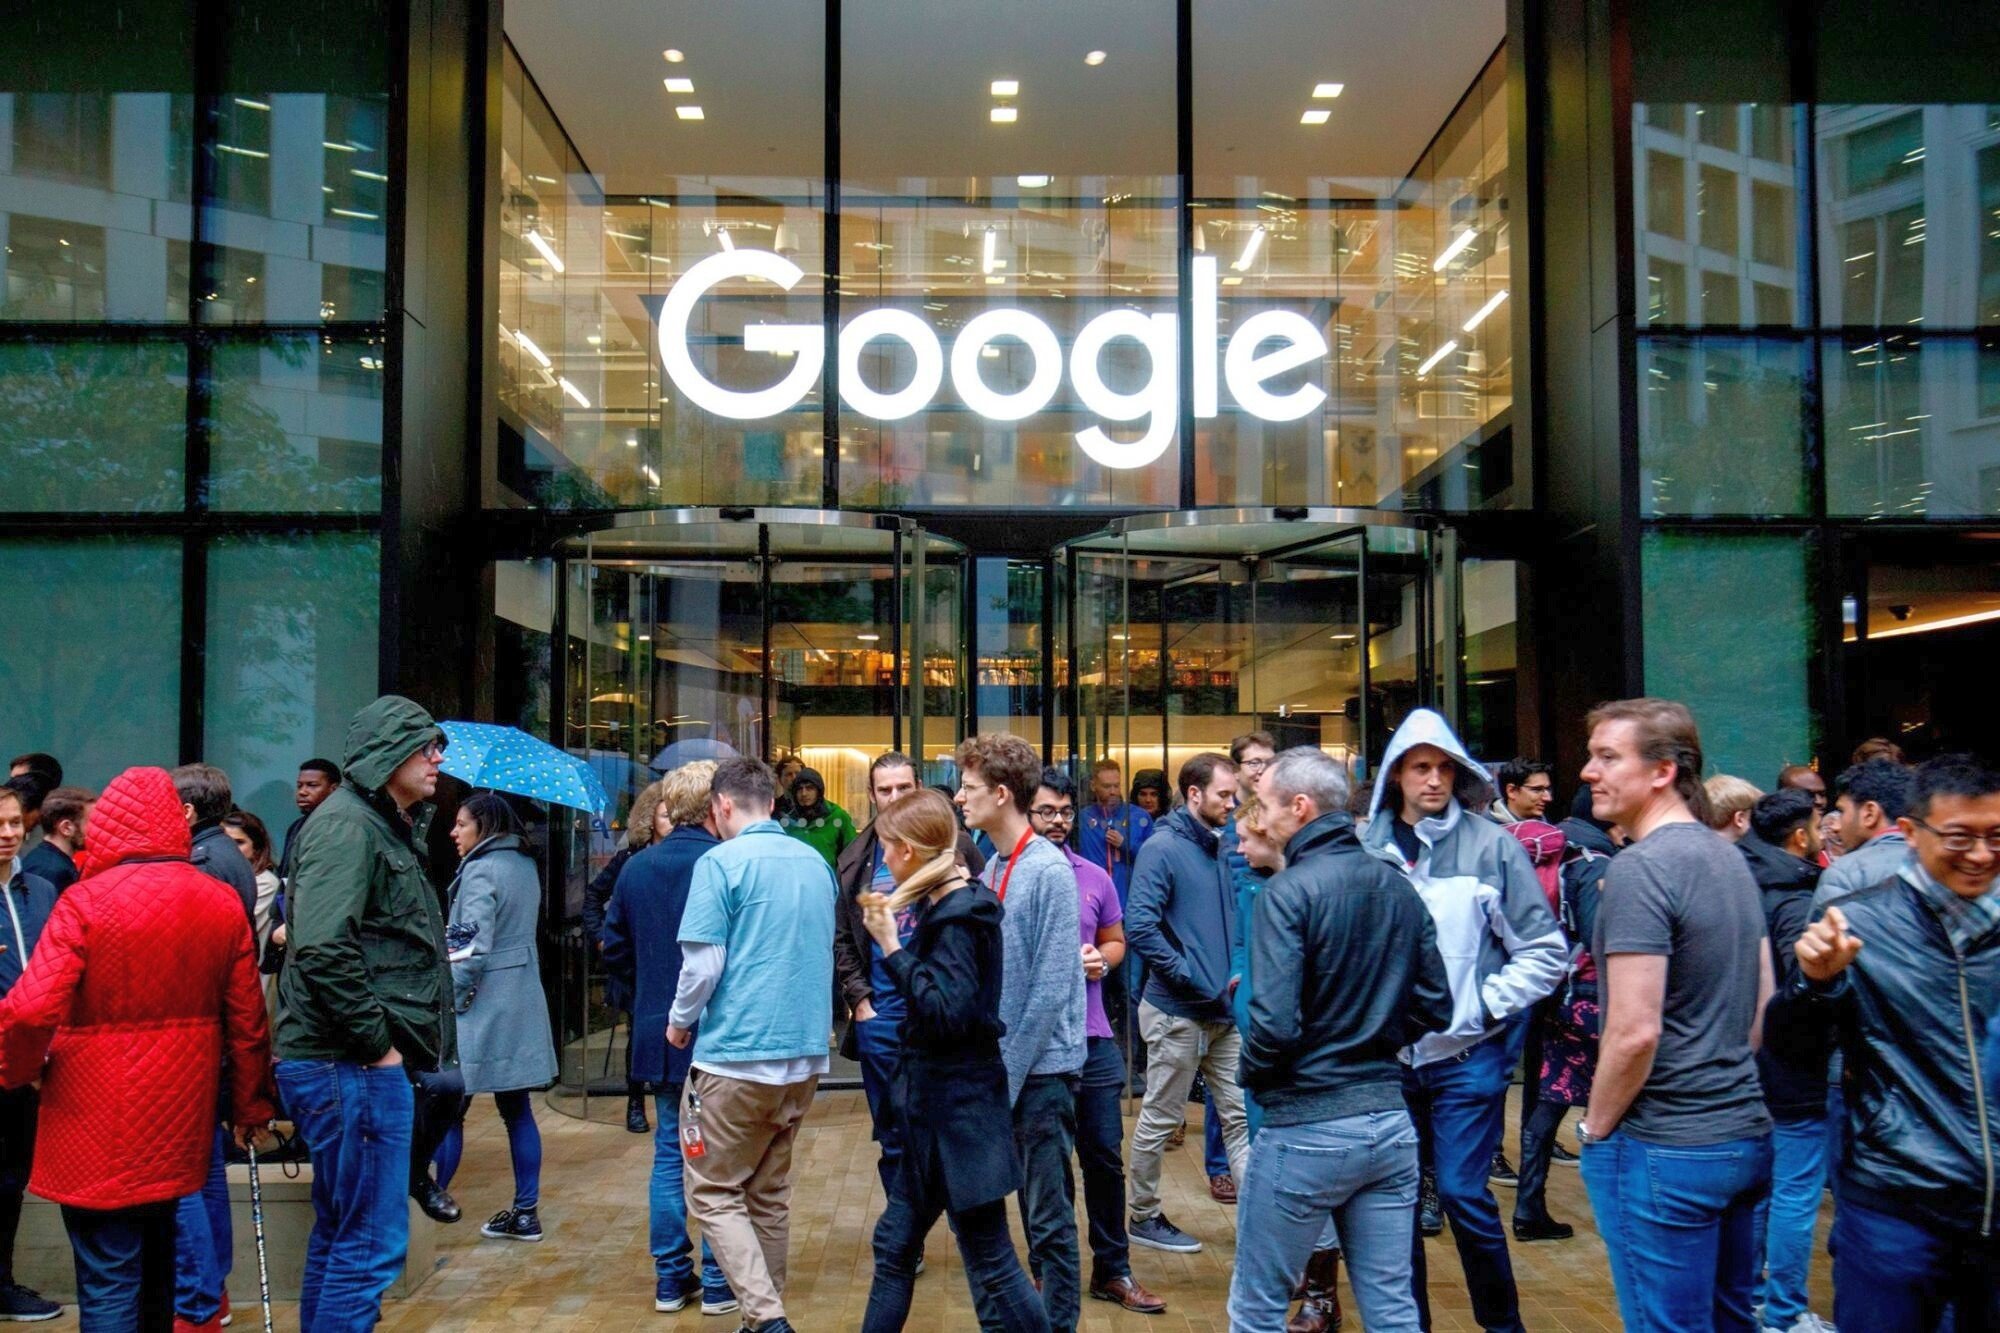 Rekordní kvartál pro Google. Technologický gigant hlásí nárůst tržeb i zisku díky reklamě